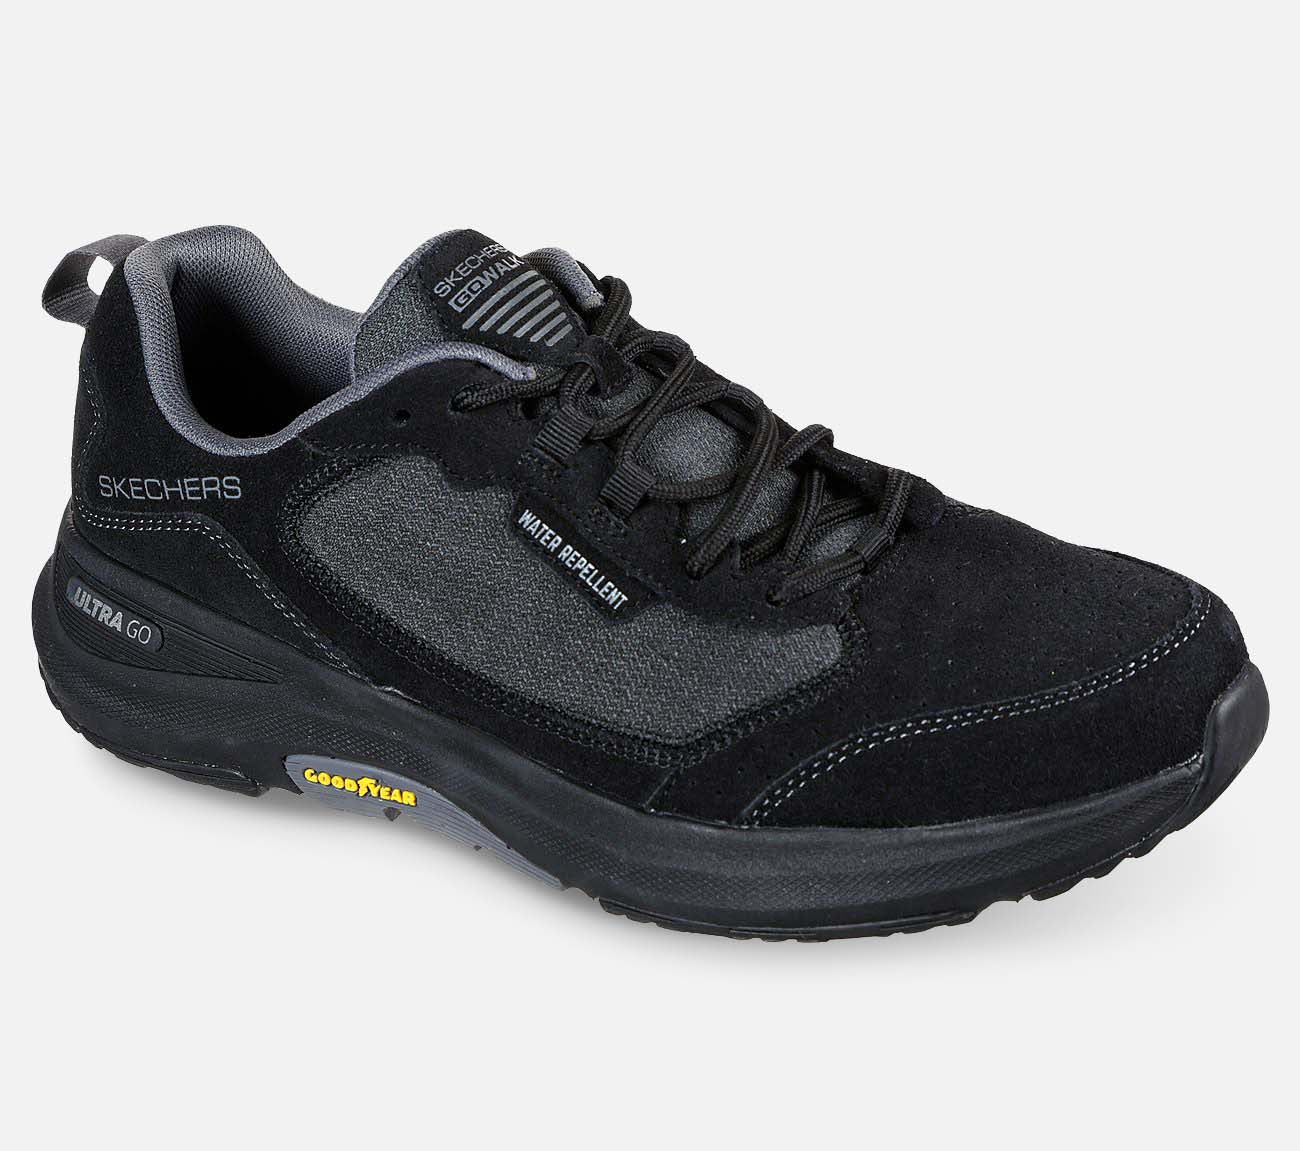 GO WALK Outdoors Minsi - Water Repellent Shoe Skechers